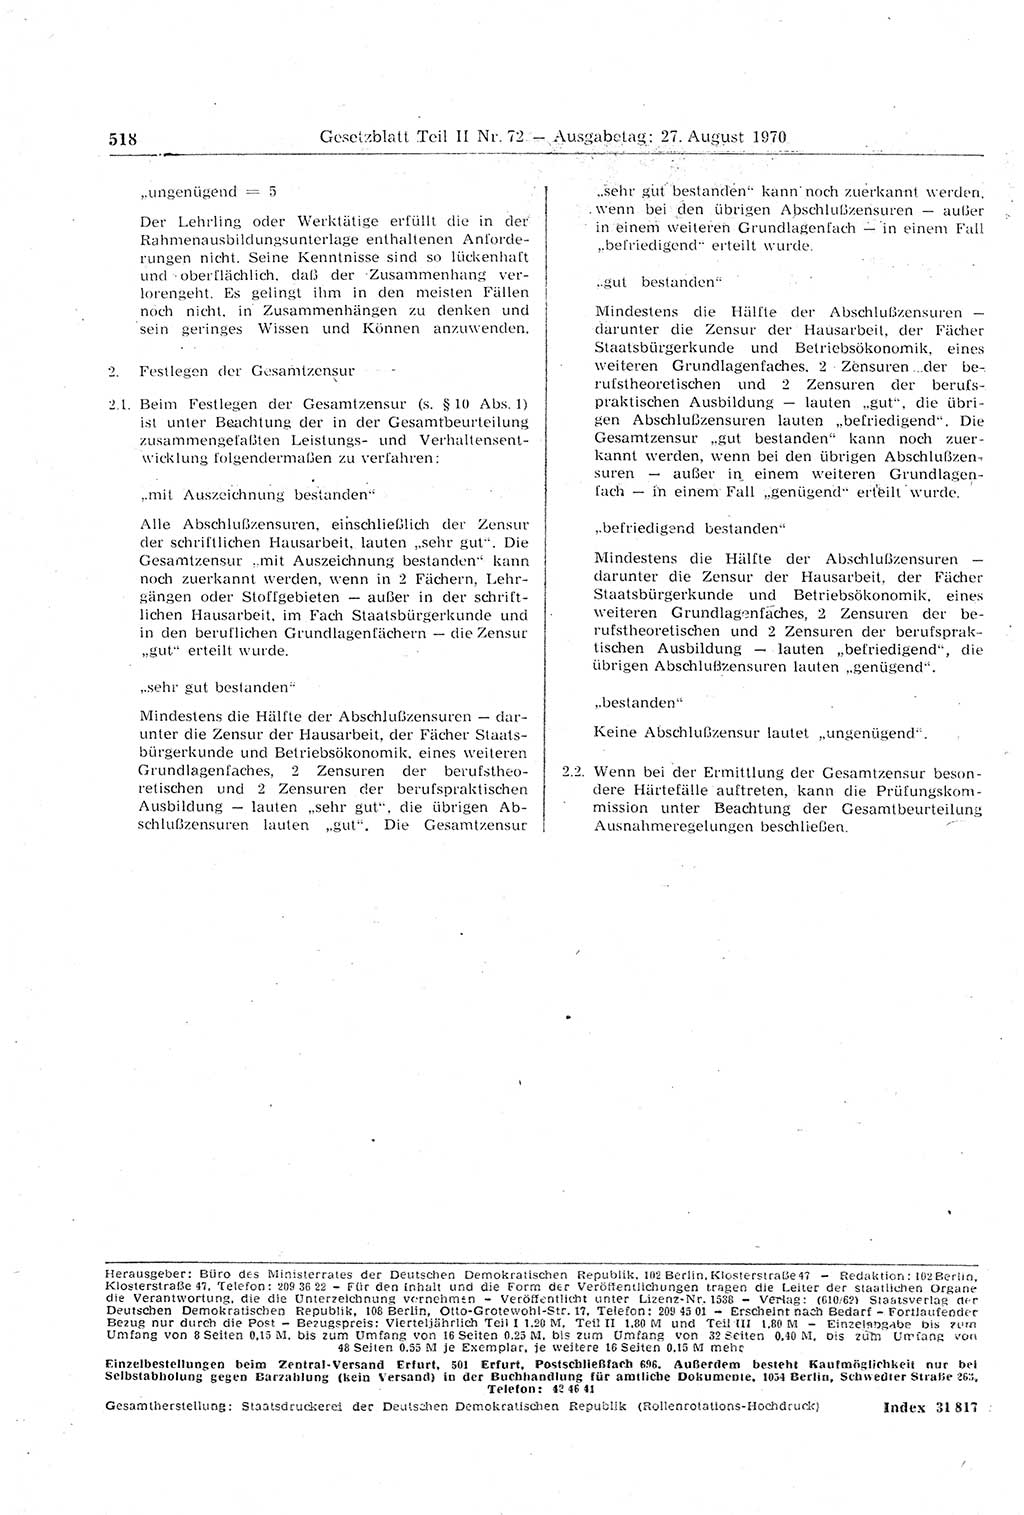 Gesetzblatt (GBl.) der Deutschen Demokratischen Republik (DDR) Teil ⅠⅠ 1970, Seite 518 (GBl. DDR ⅠⅠ 1970, S. 518)